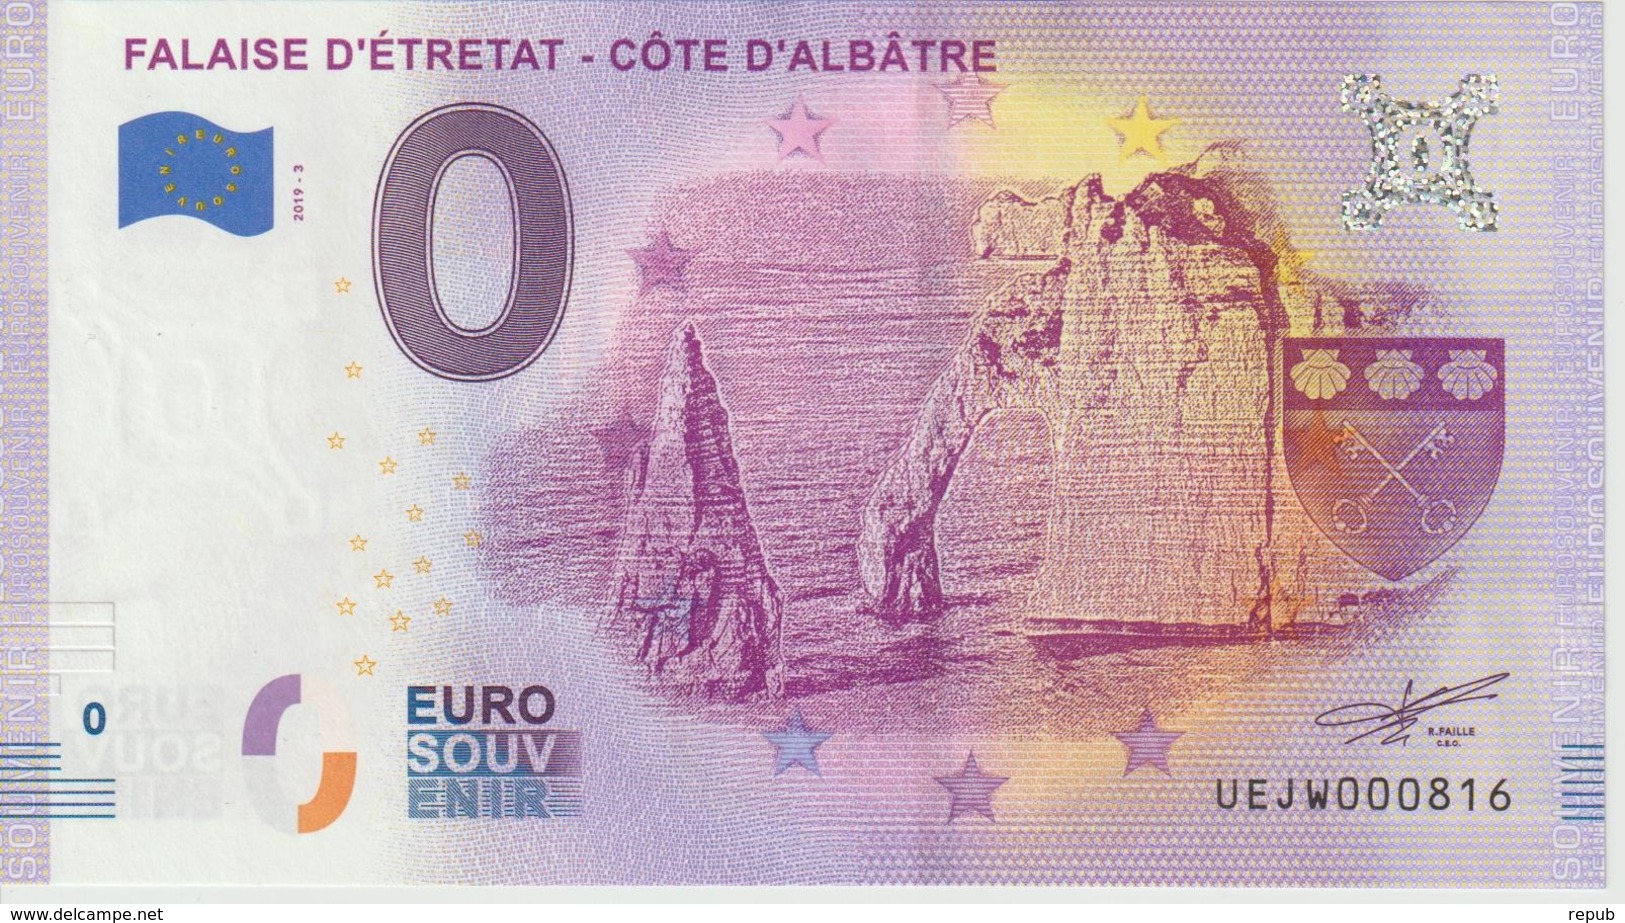 Billet Touristique 0 Euro Souvenir France 76 Falaise D'Etretat 2019-3 N°UEJW000816 - Privatentwürfe